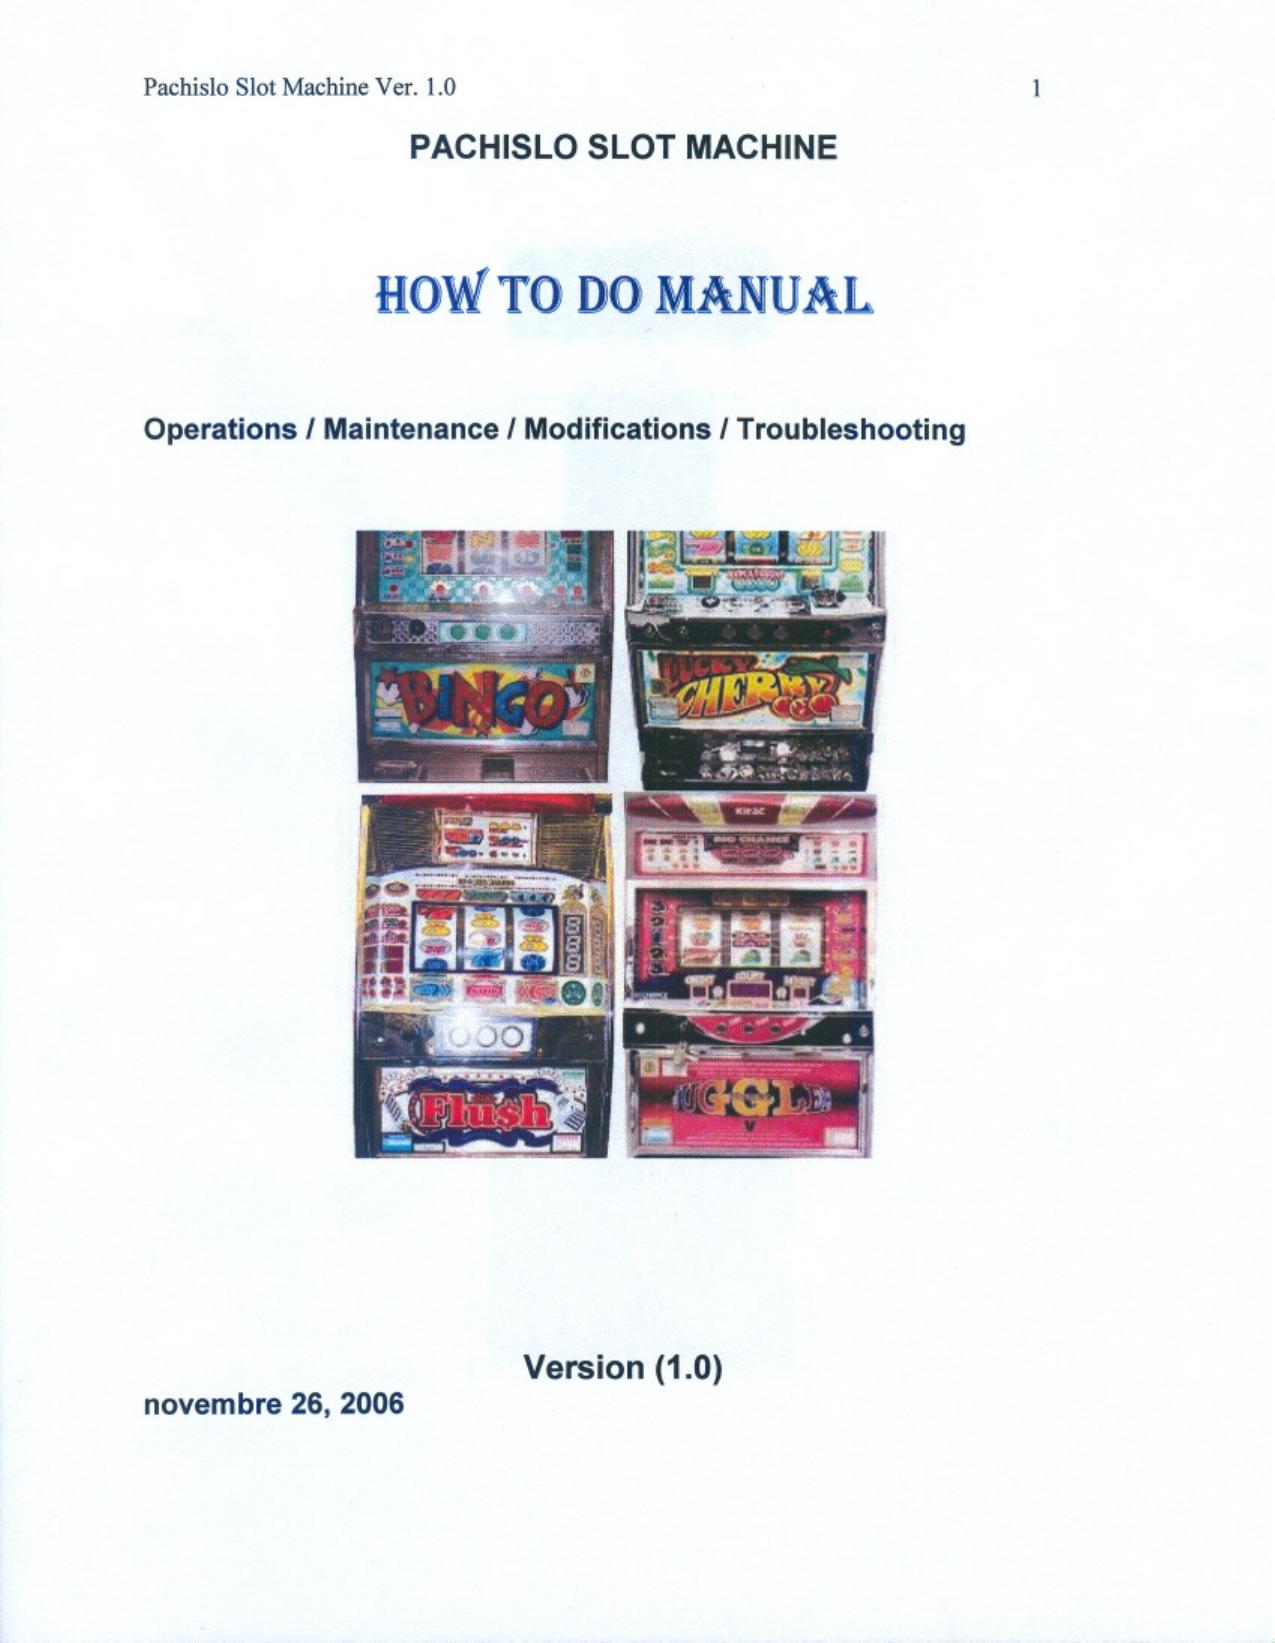 general-pachislot-manual